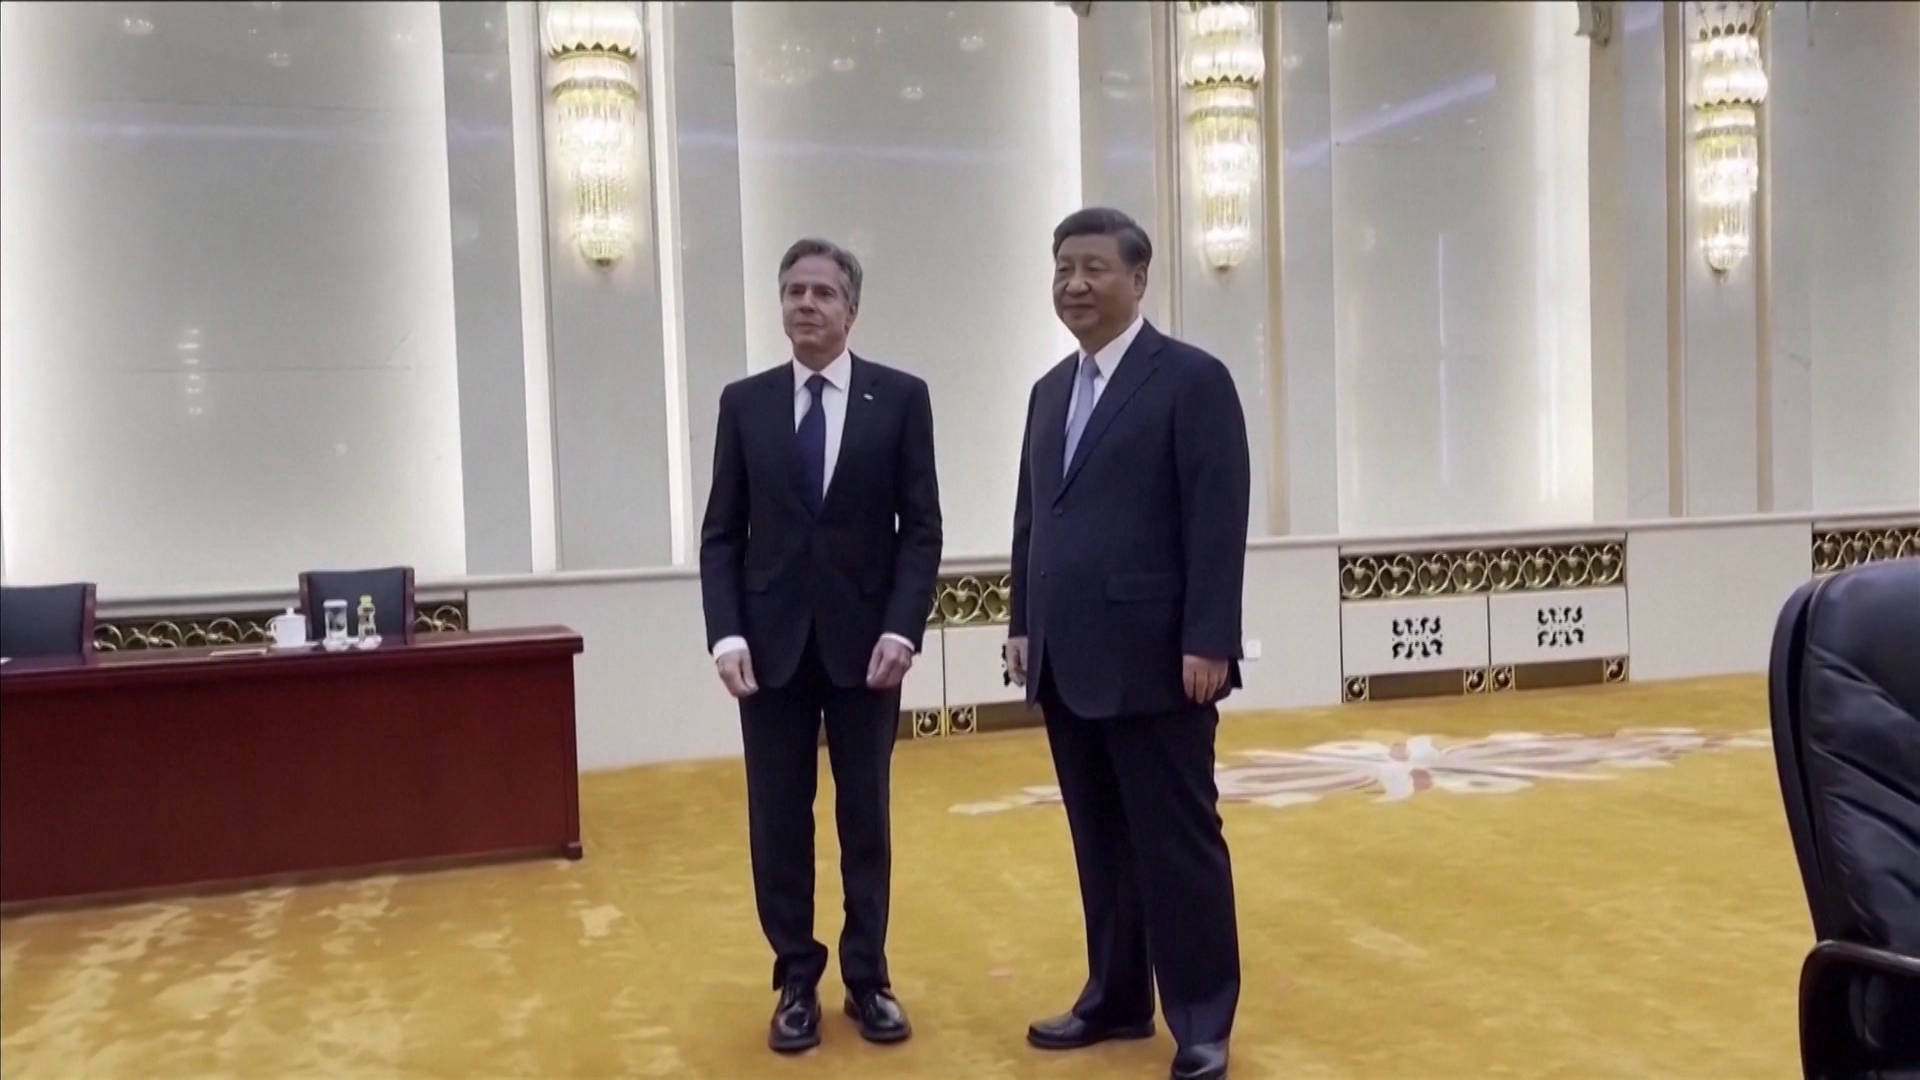 Sekretarz stanu USA spotyka się z prezydentem Chin w Pekinie, próbując „ustabilizować” stosunki między obydwoma krajami